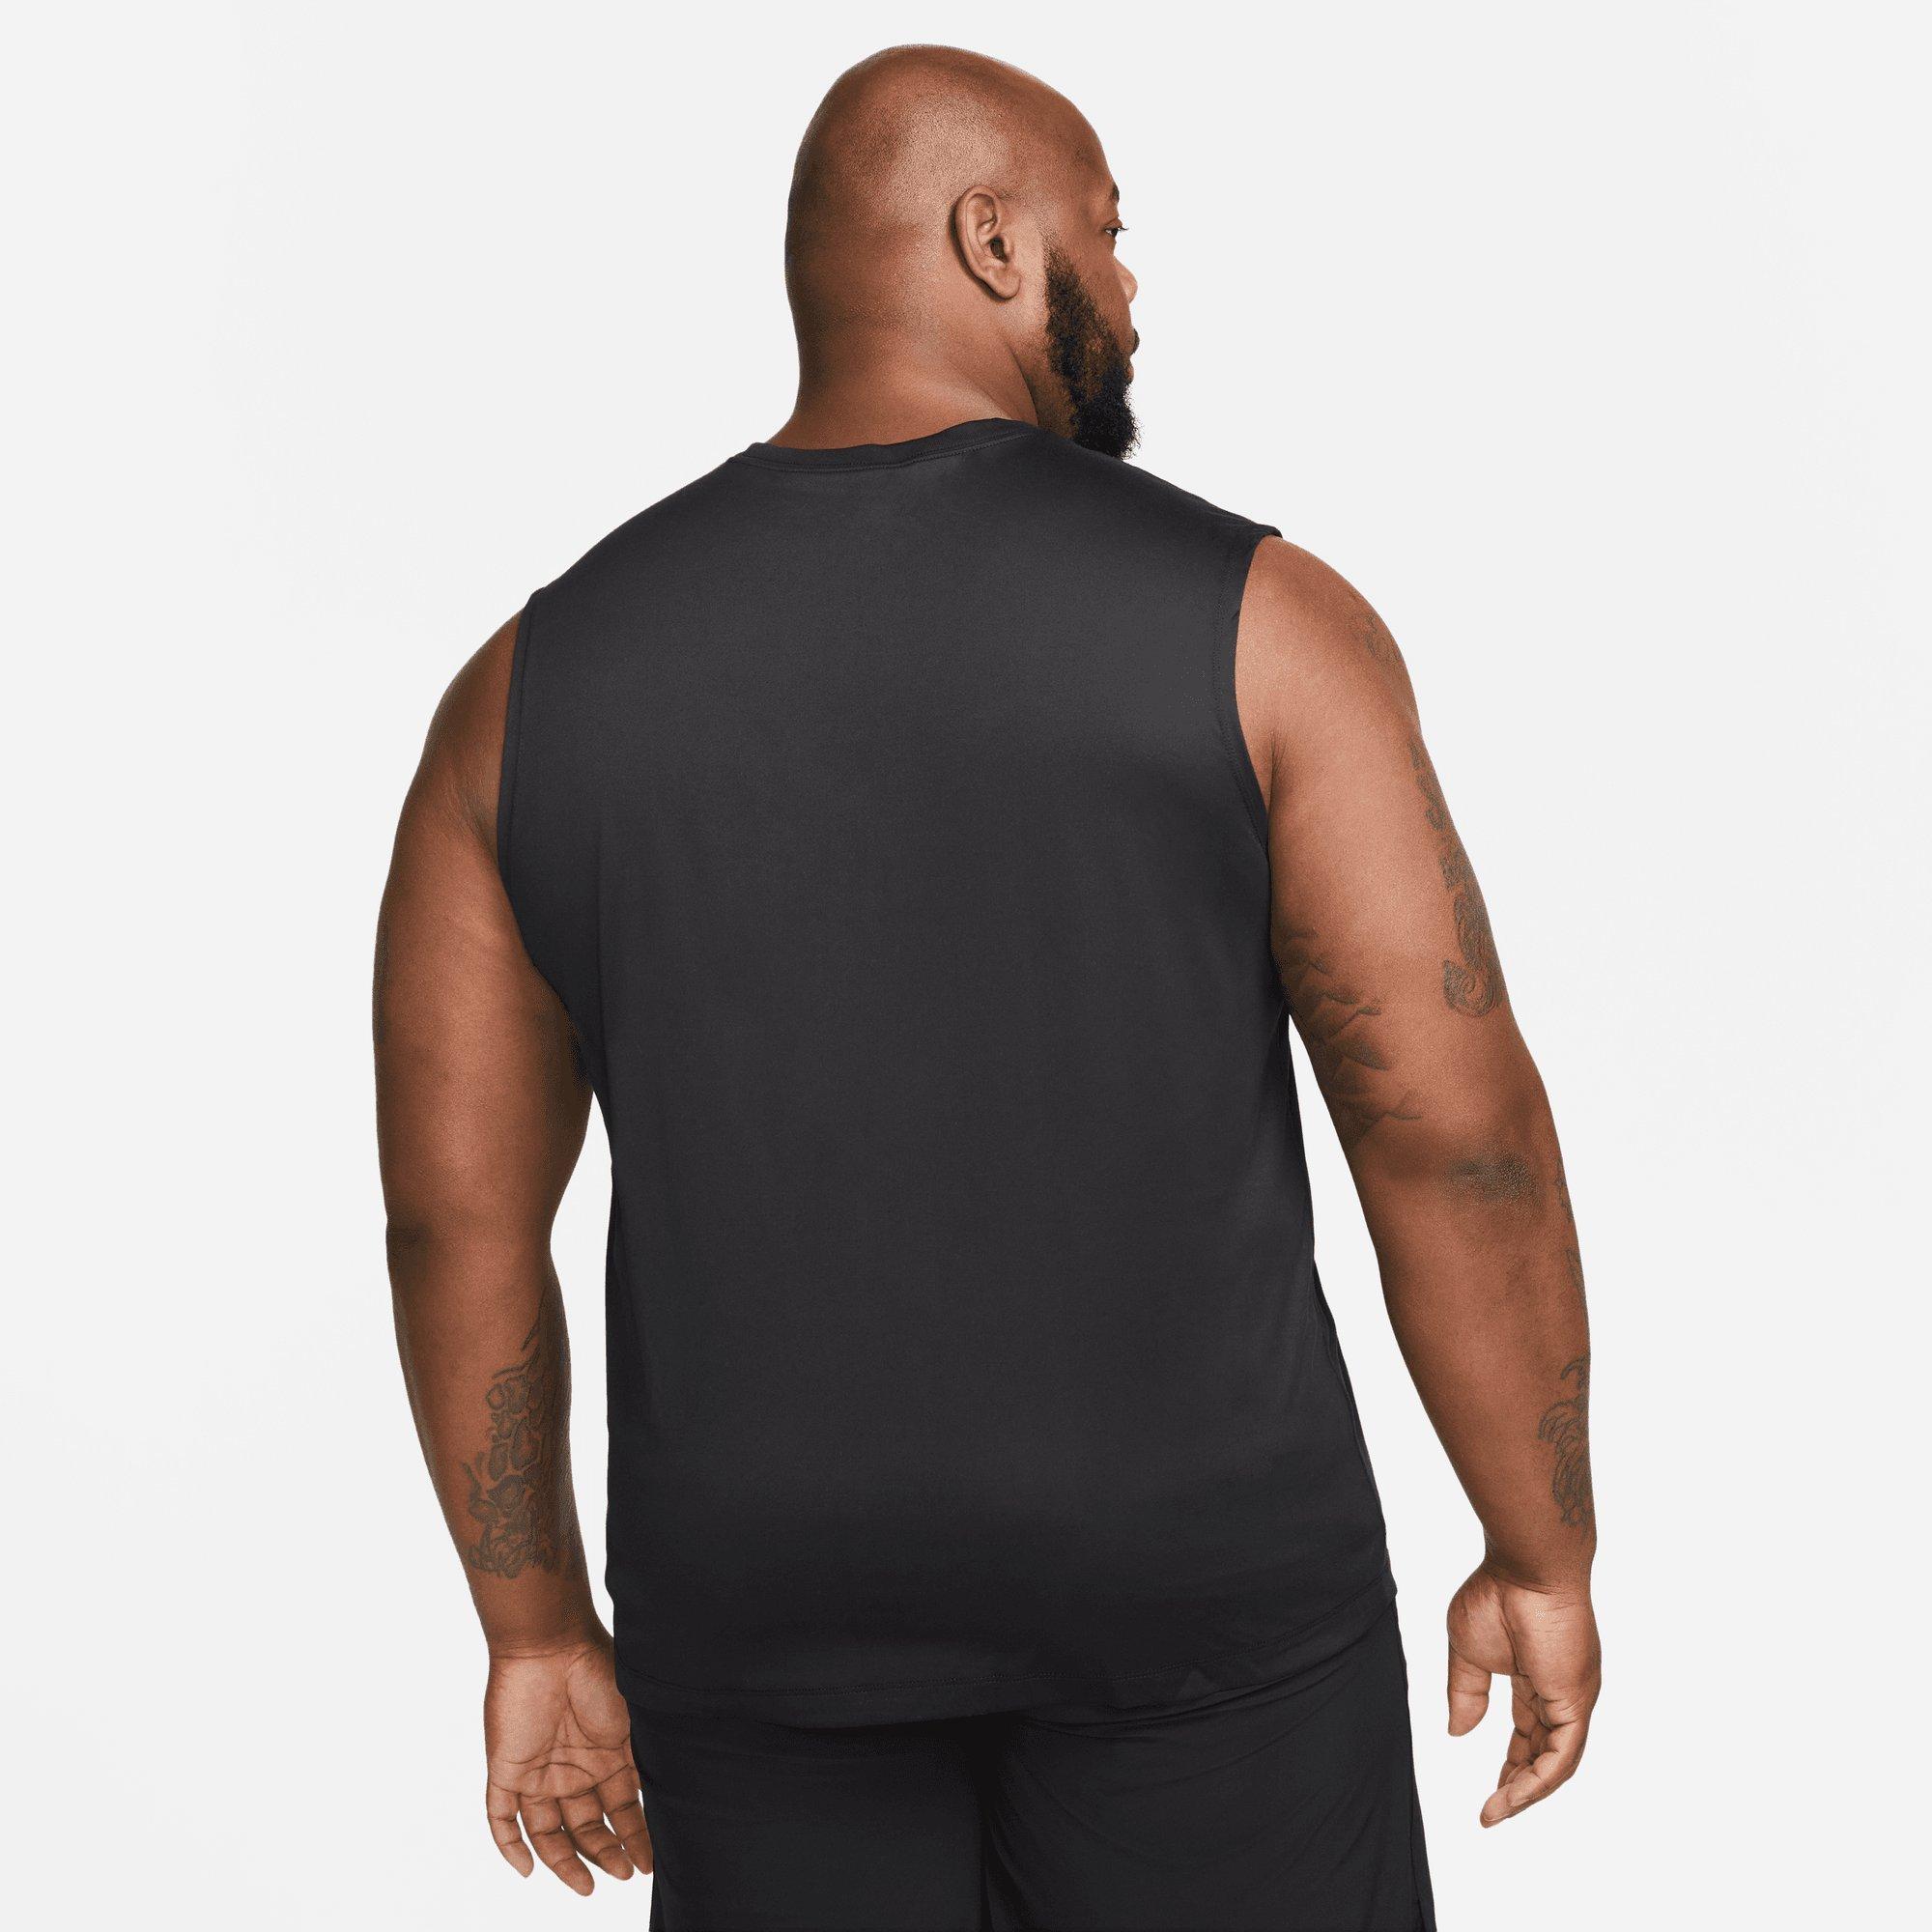 Men's T-Shirts & Tops. Nike FI